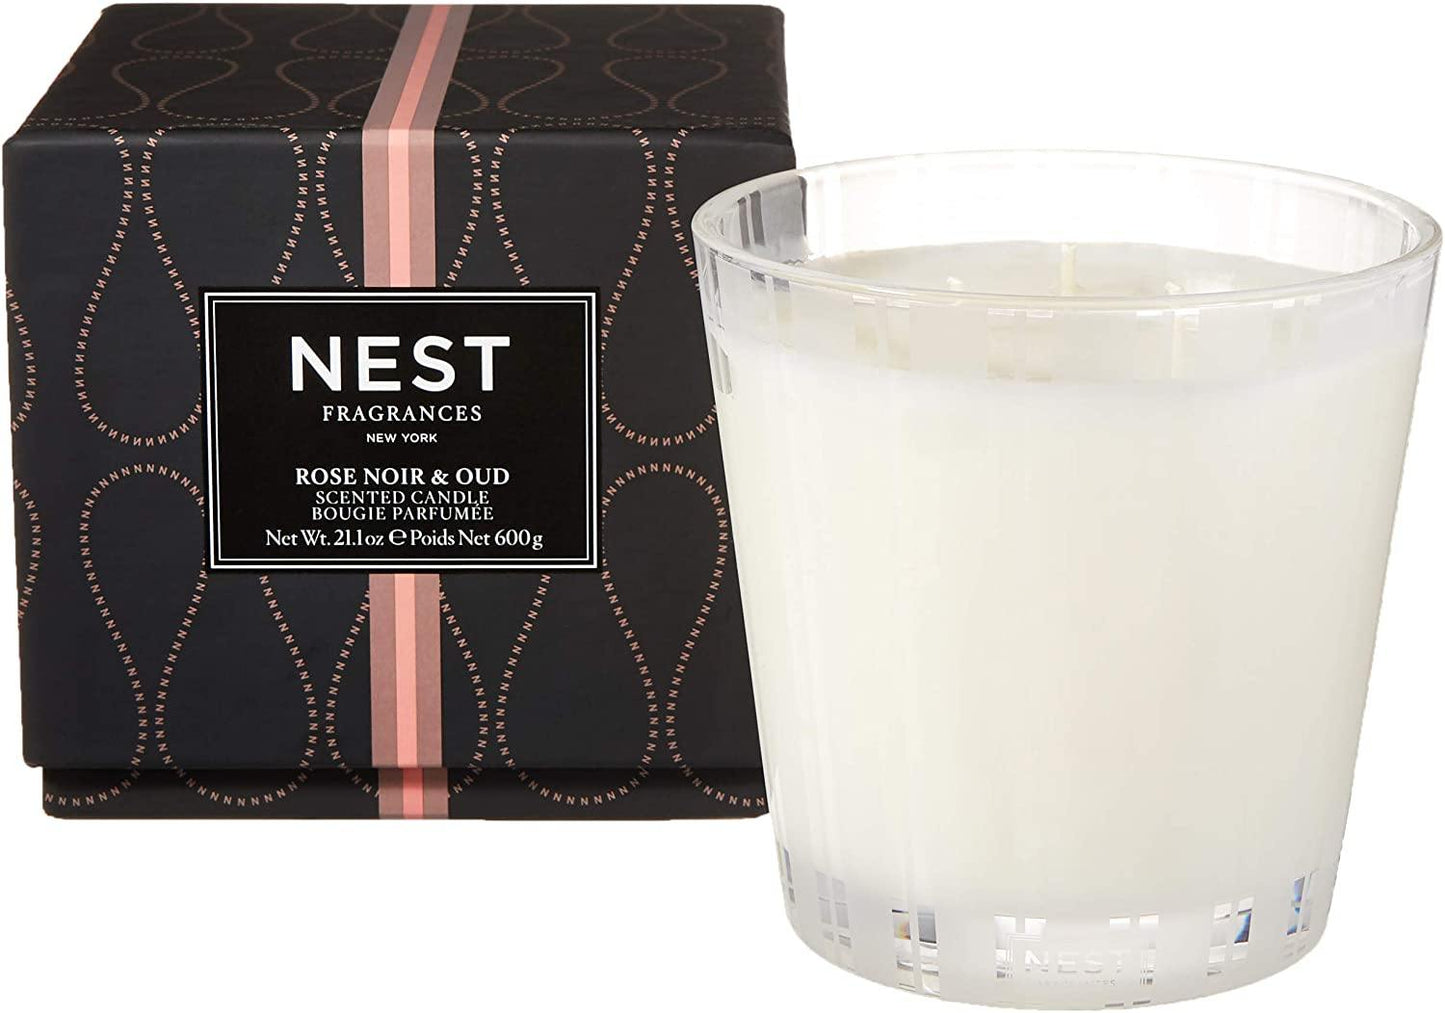 Nest Fragrances Rose Noir & Oud Candle - ScentGiant